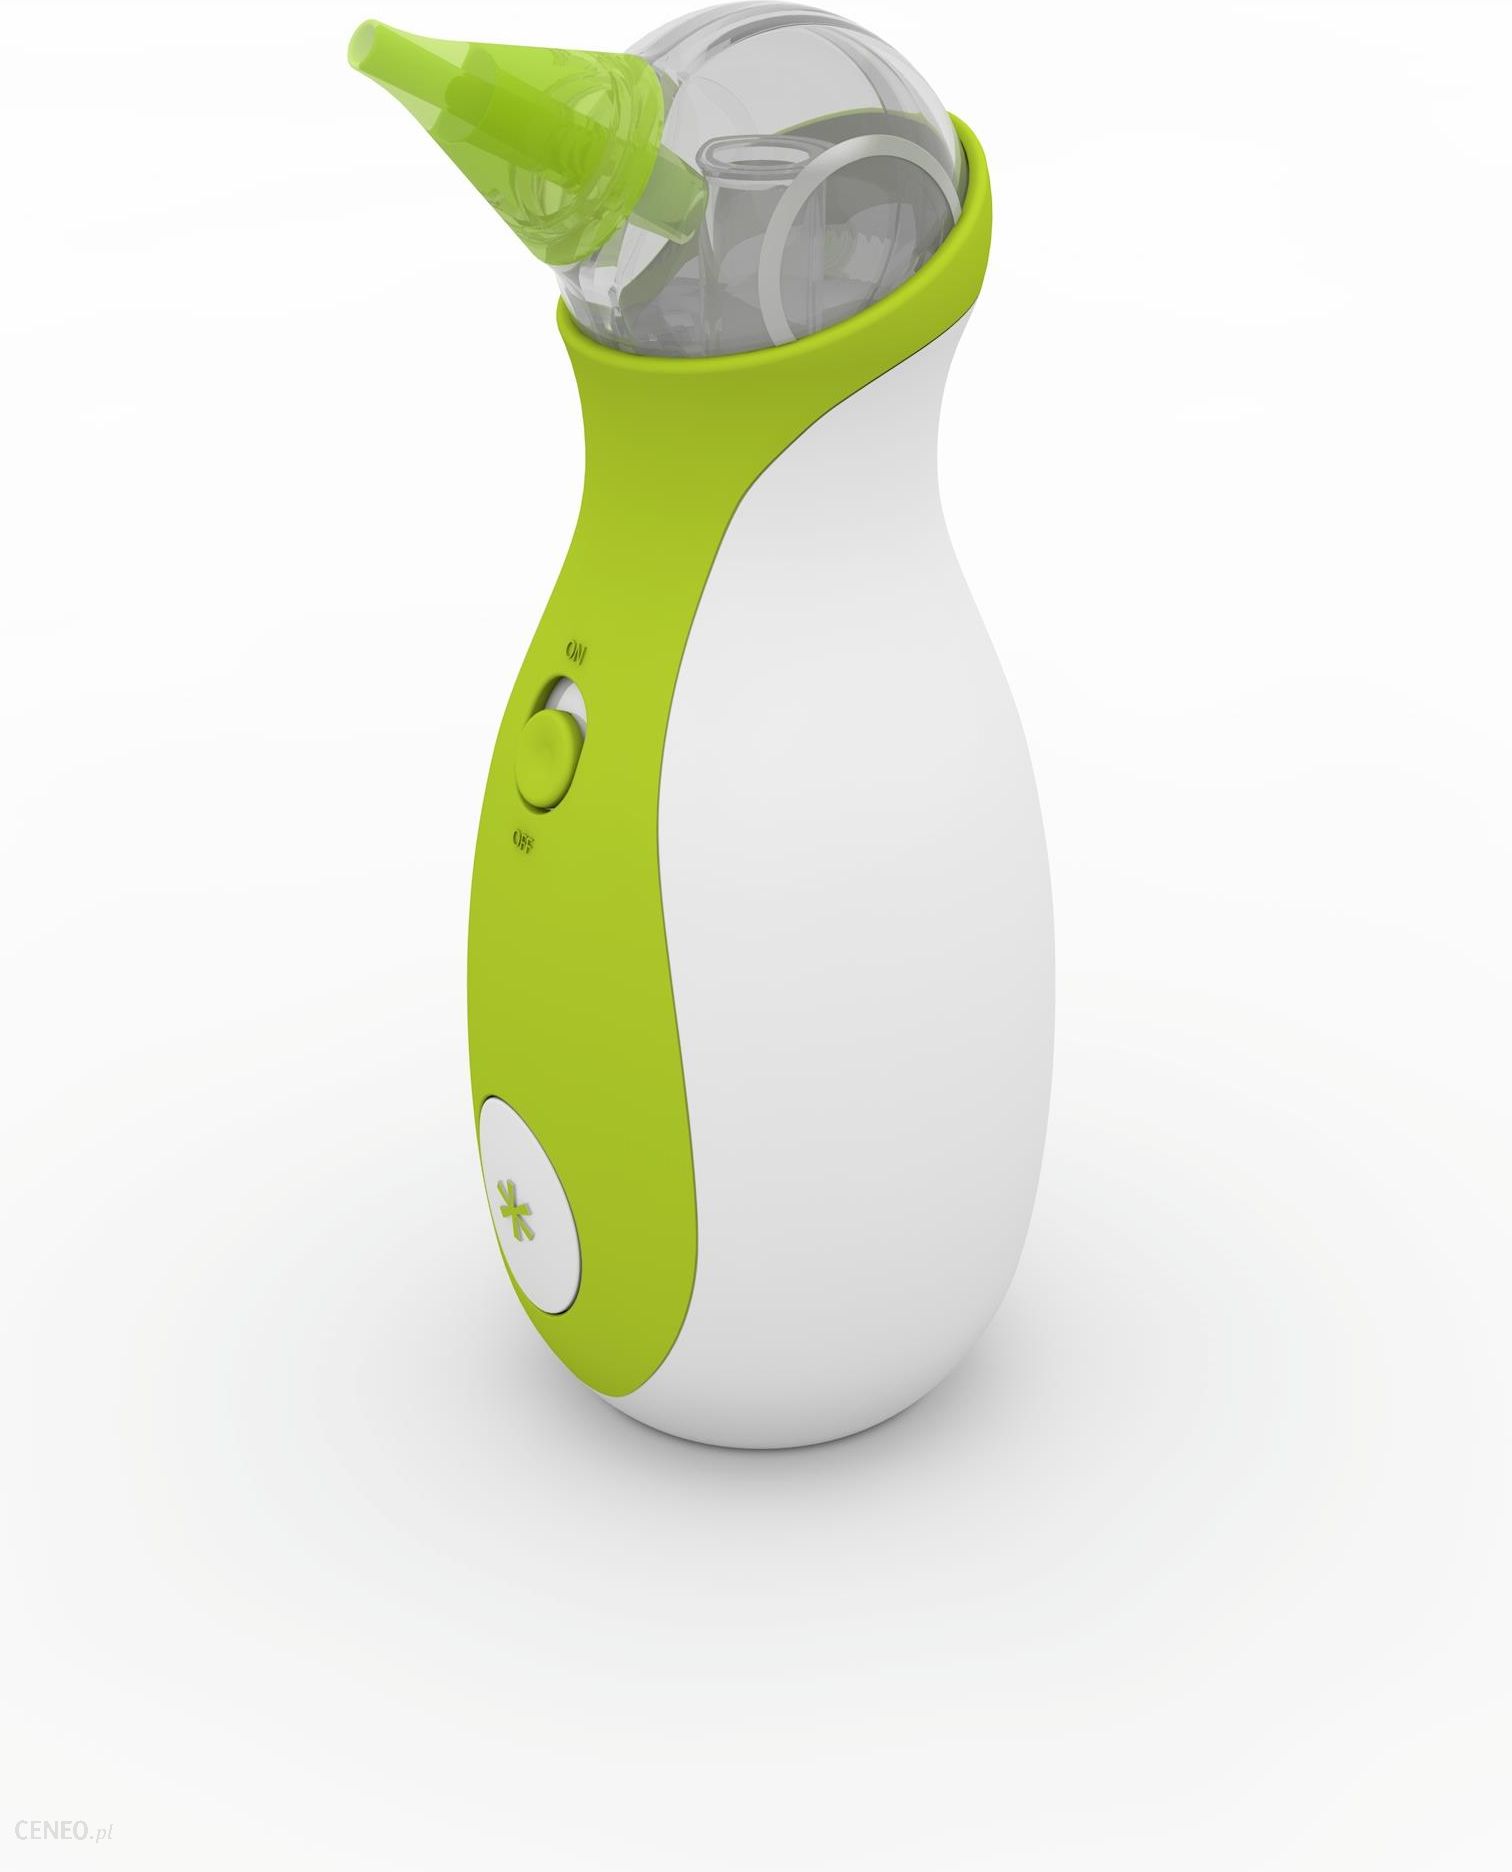 Nosiboo Pro 2 medyczny aspirator do nosa Zielony/Green V2 - Ceny i